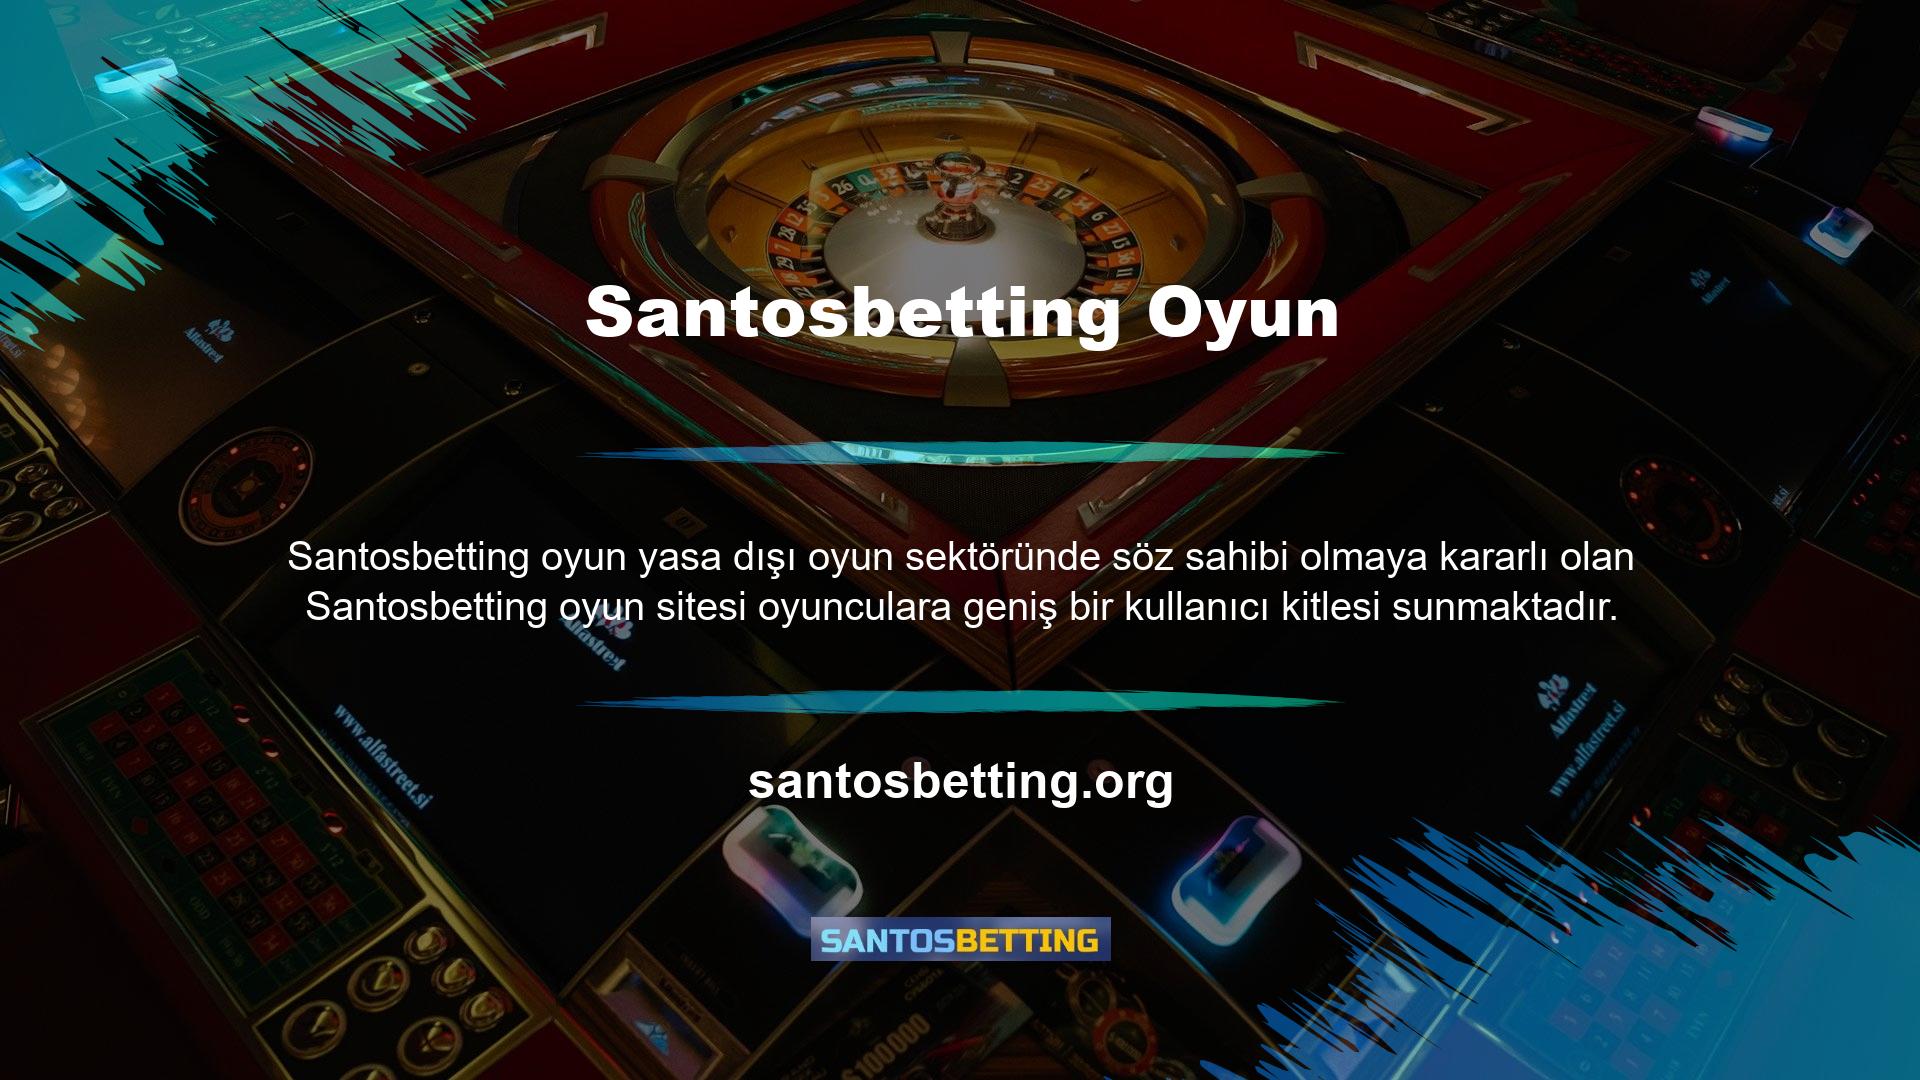 Bahisçiler, sürekli değişen oyun içi oranlara göre Santosbetting bahis sitesinde canlı bahis ile bahis eğlencesini en üst düzeyde yaşayabilirler